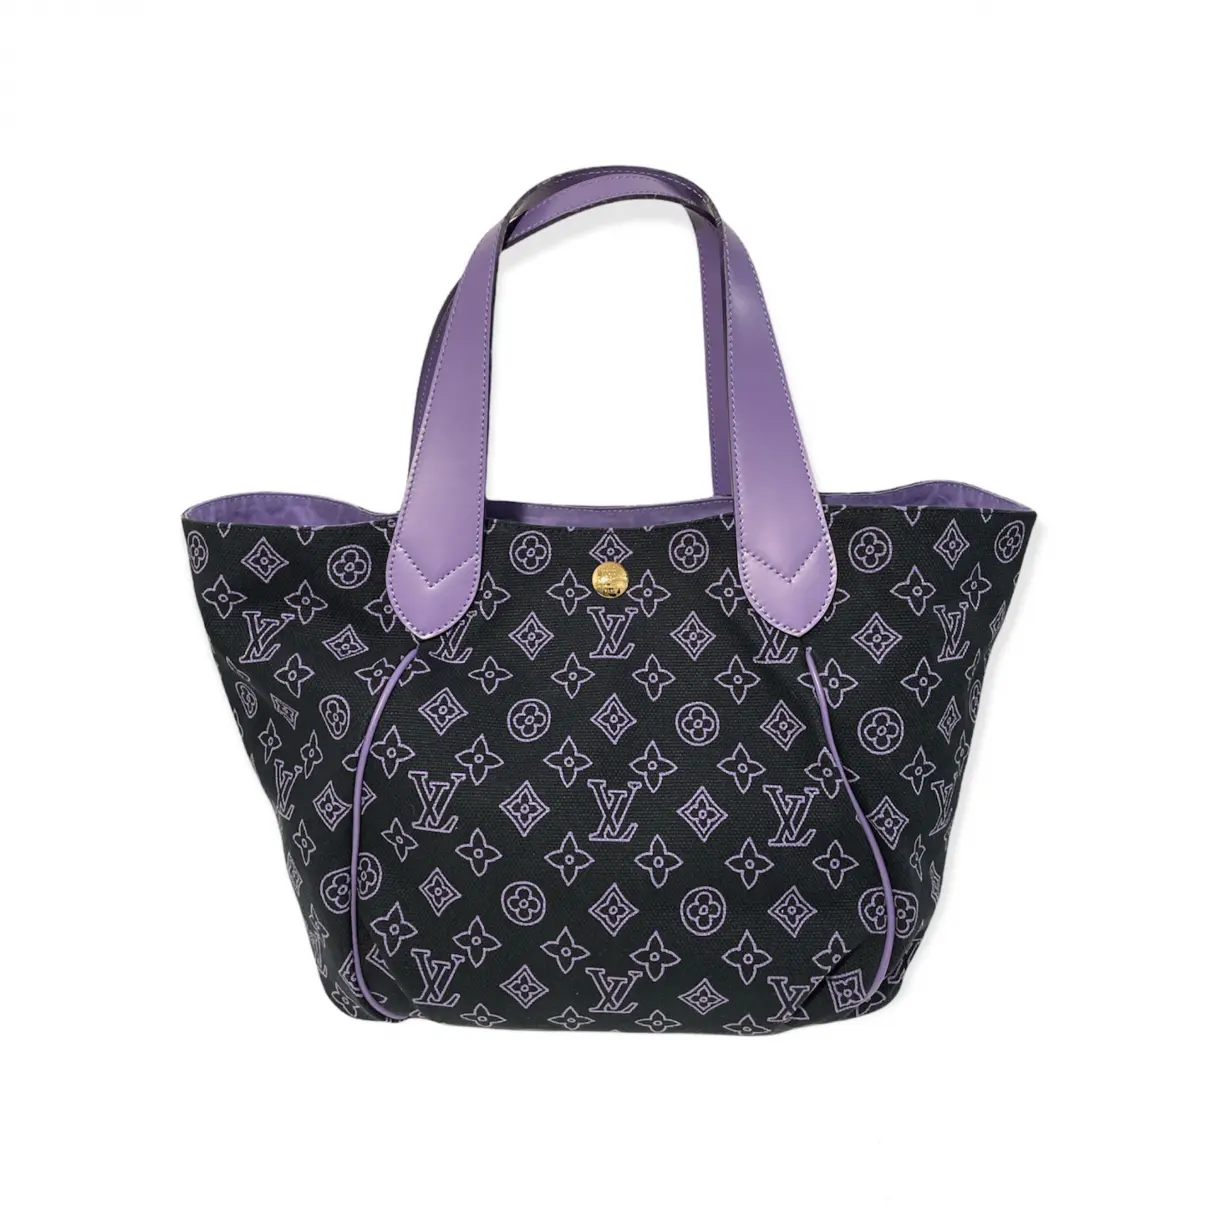 Buy Louis Vuitton Ipanema cloth handbag online